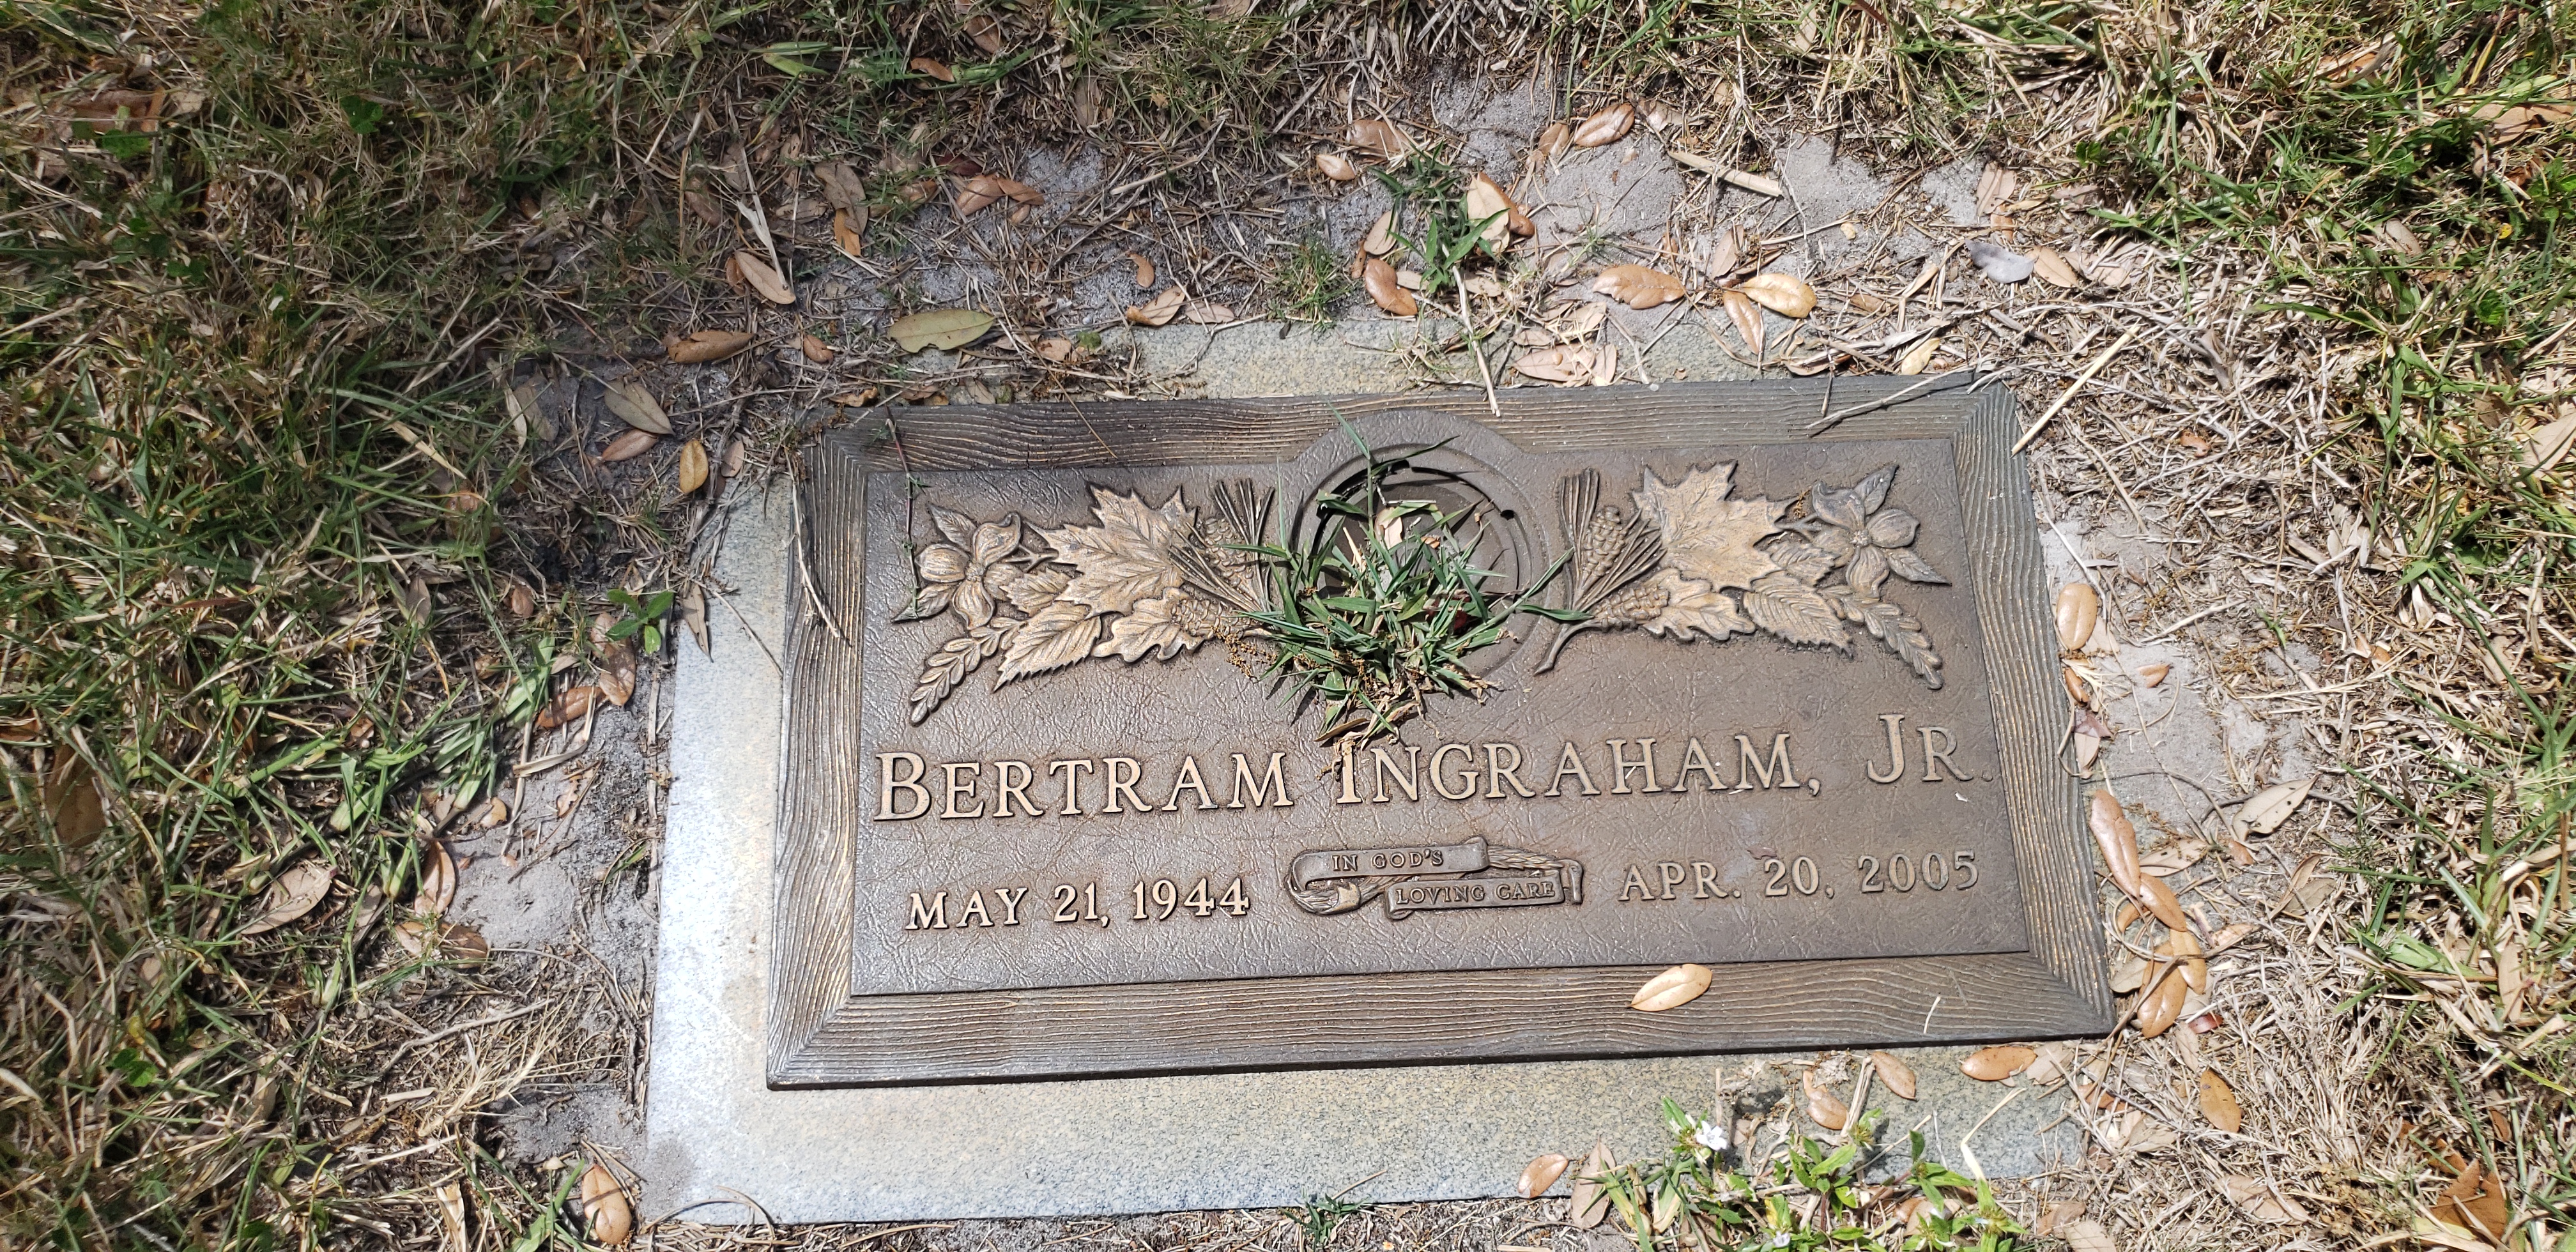 Bertram Ingraham, Jr